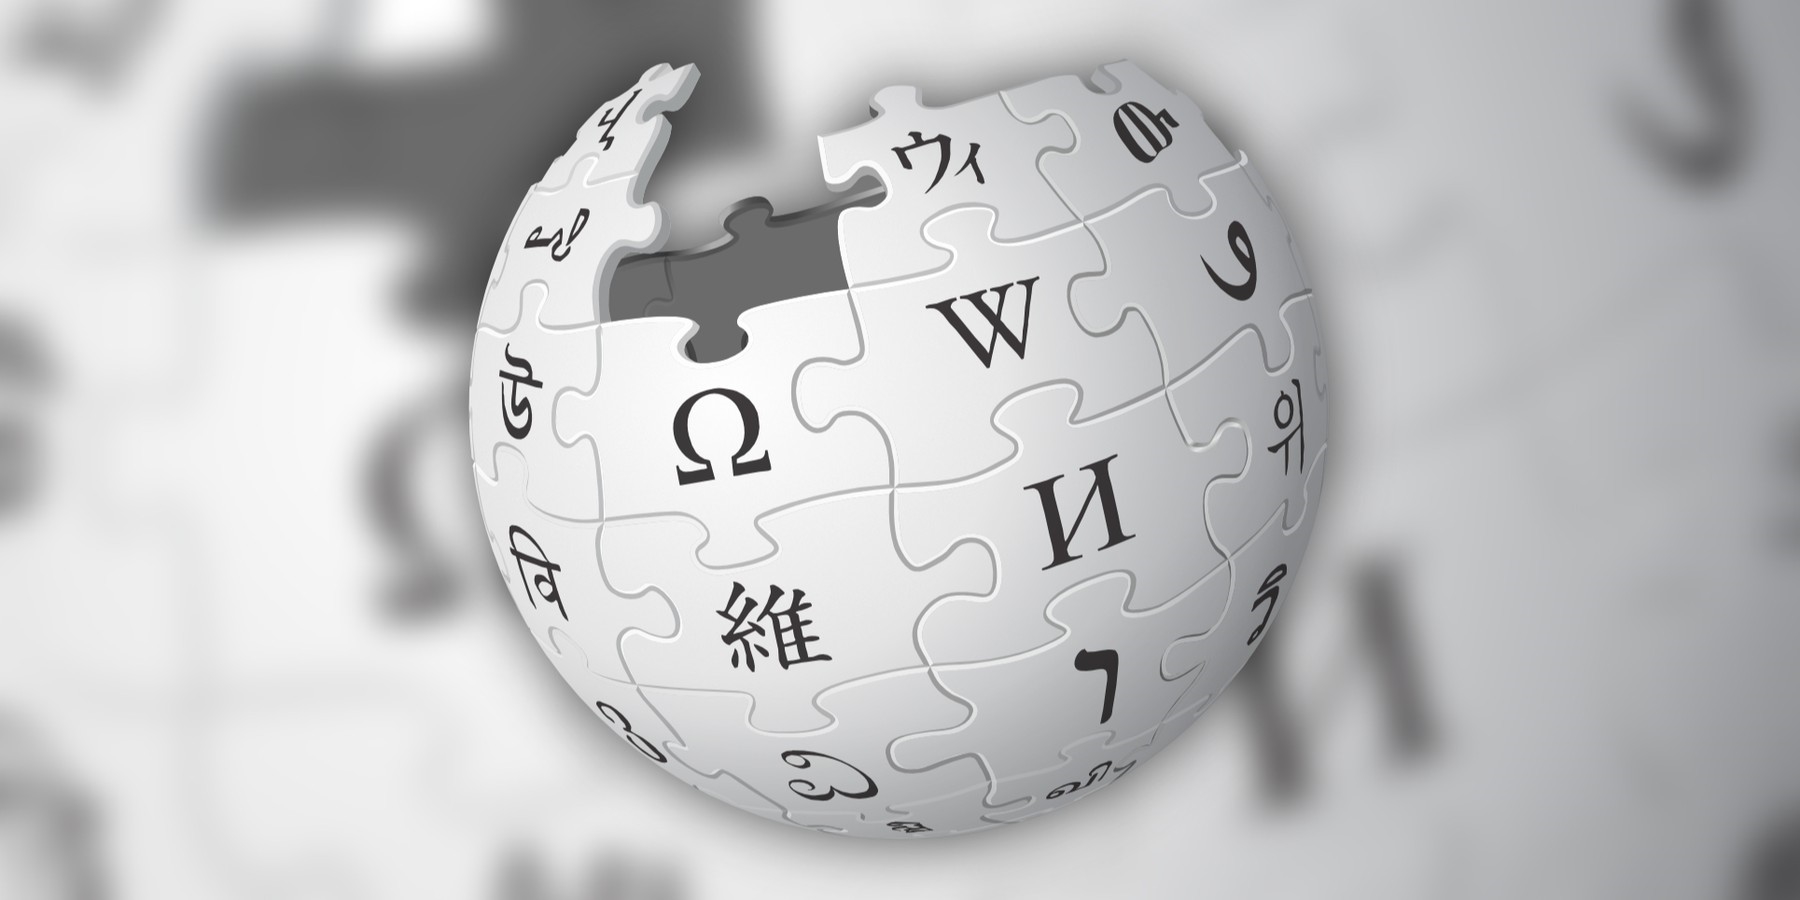 wikipedie chce více videa. usnadňuje jeho nahrávání, ale youtube to pořád není